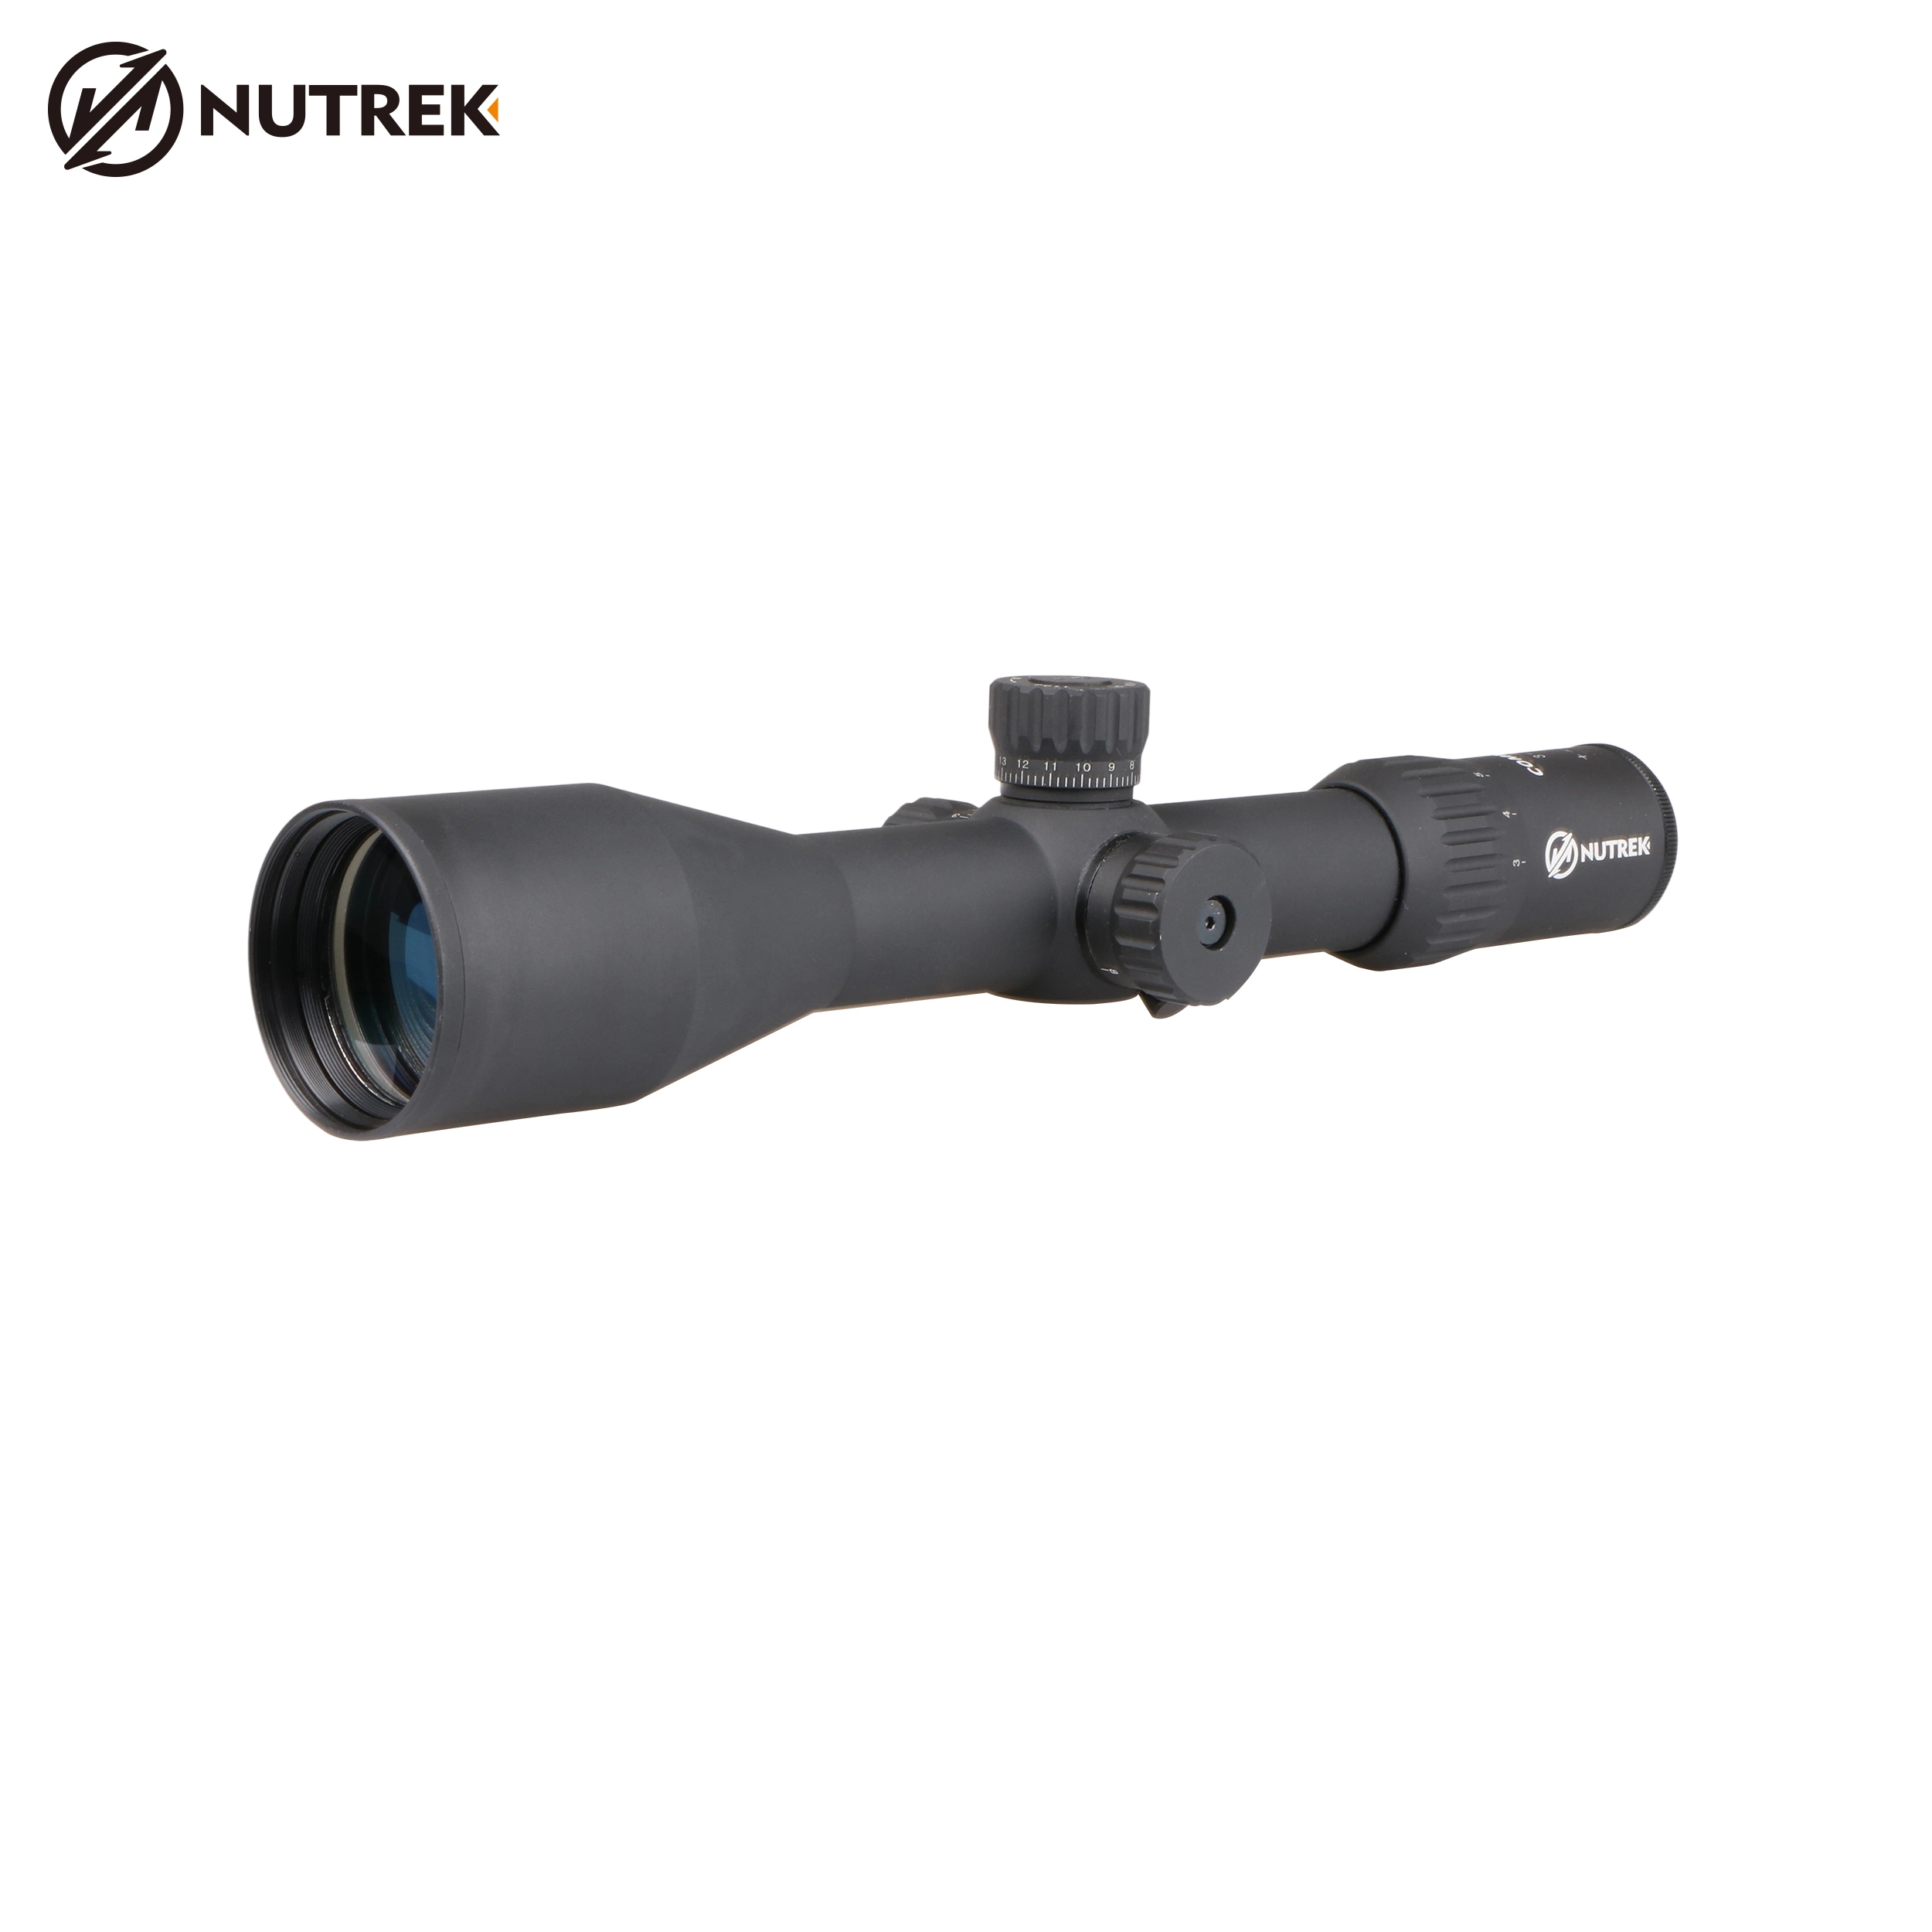 Nutrek Optics 3-12X50 First Focal Plane Waterproof Riflescope